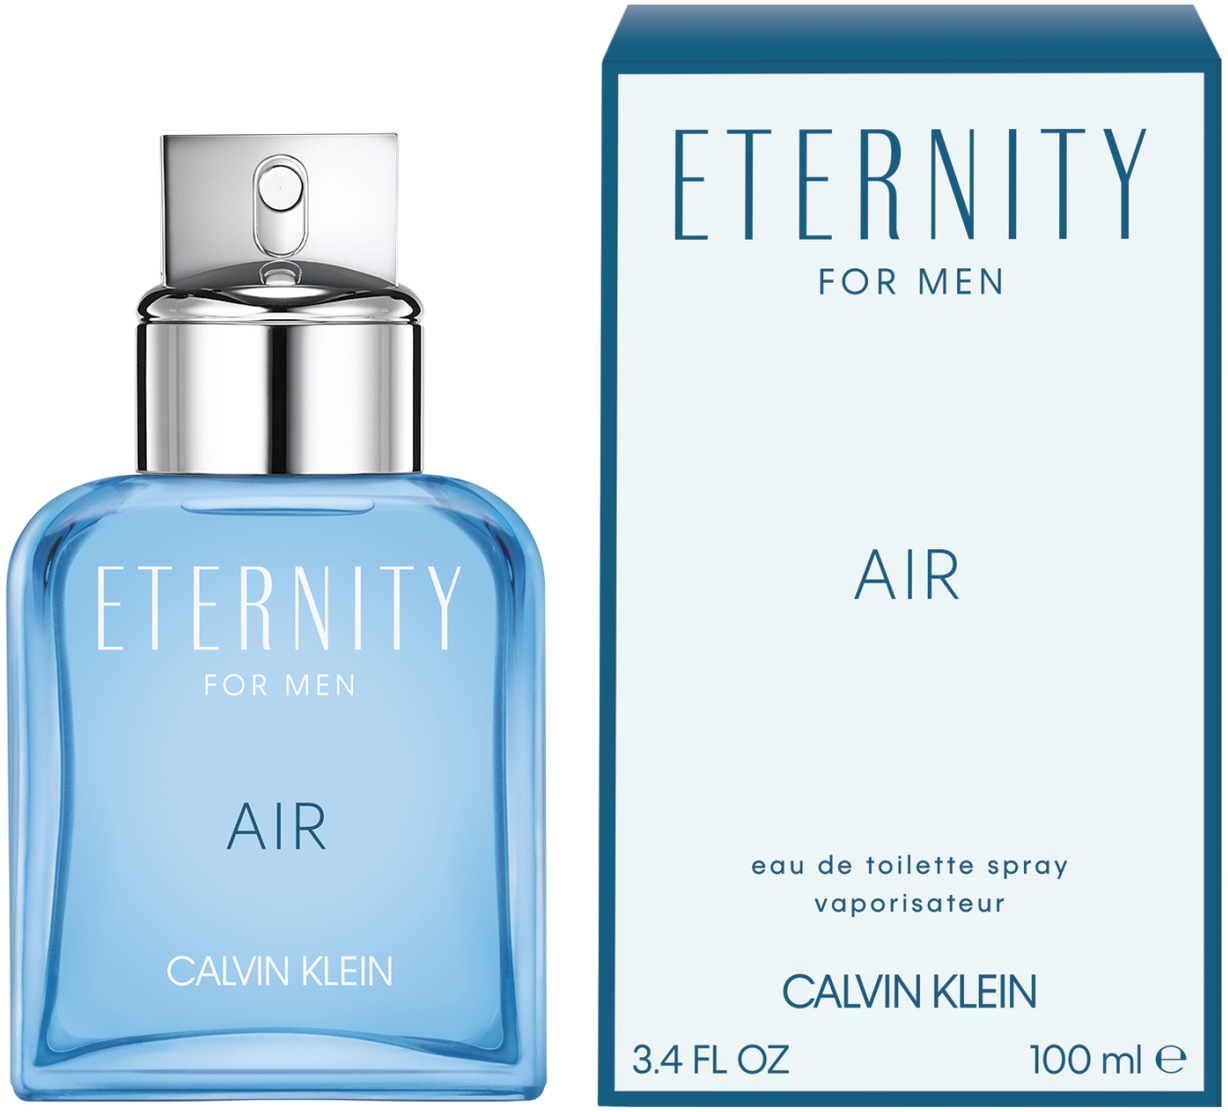 calvin klein air perfume 100ml